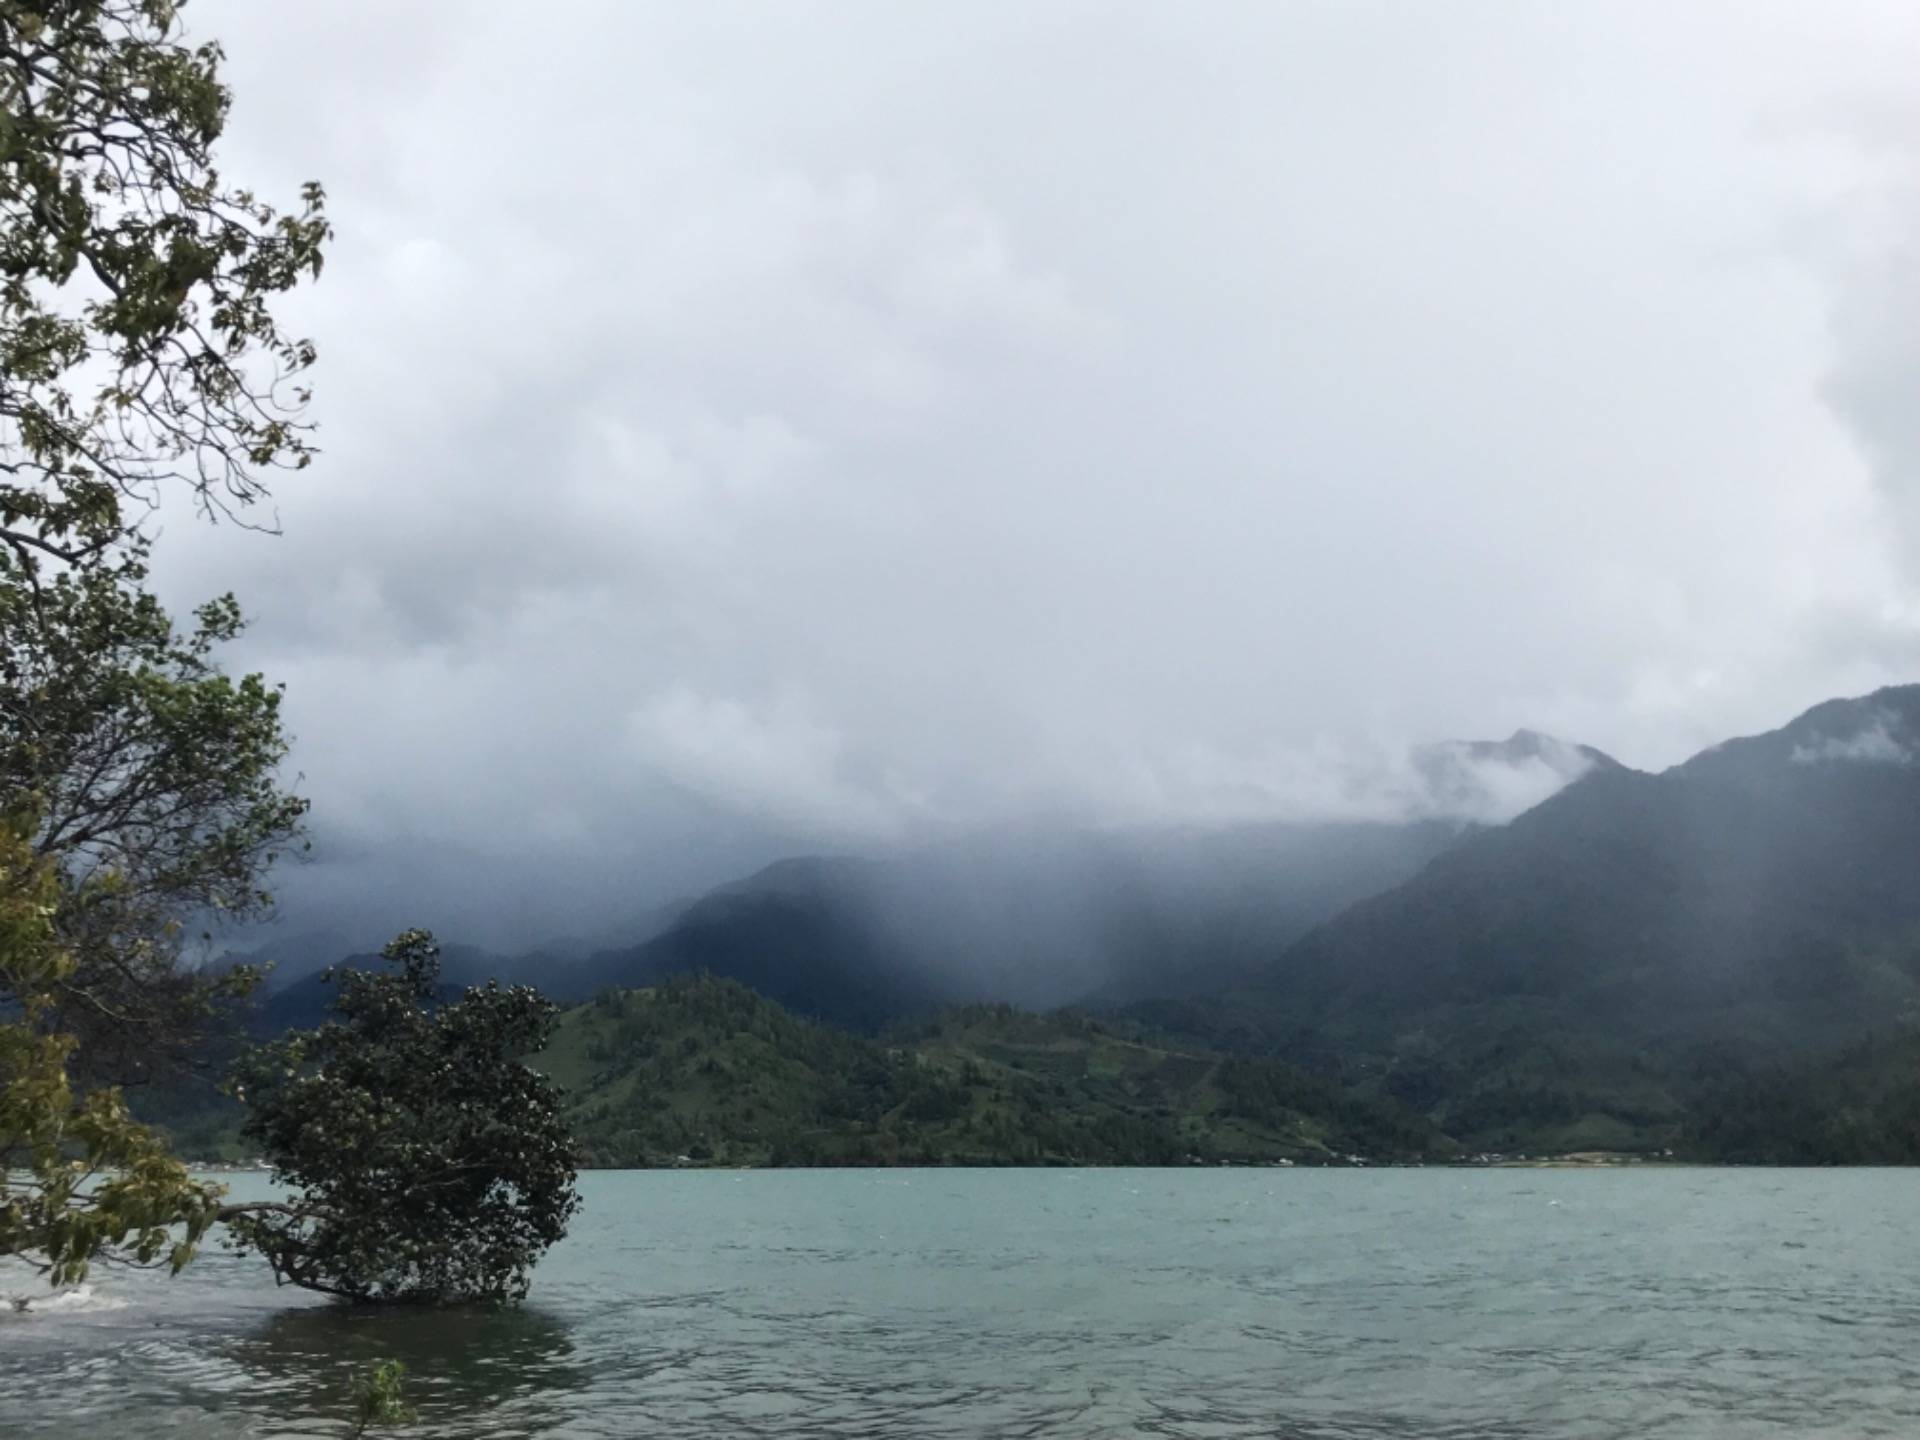 The view of Lake Laut Tawar